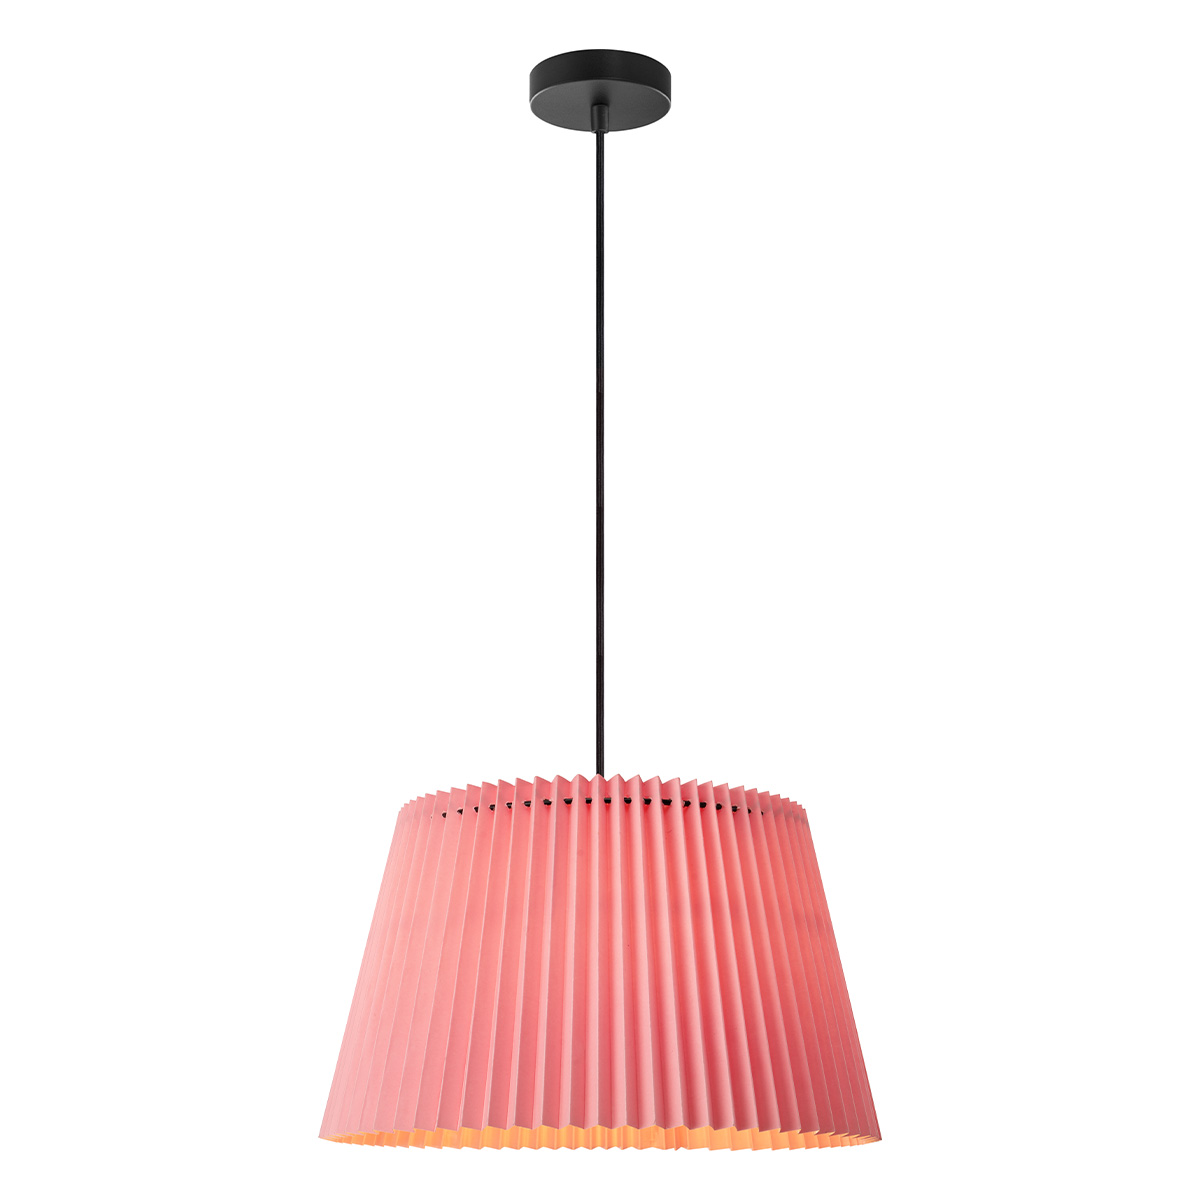 Tangla Lighting - LED Pendant lamp 1 Light - metal + paper - pink - pleat - E27